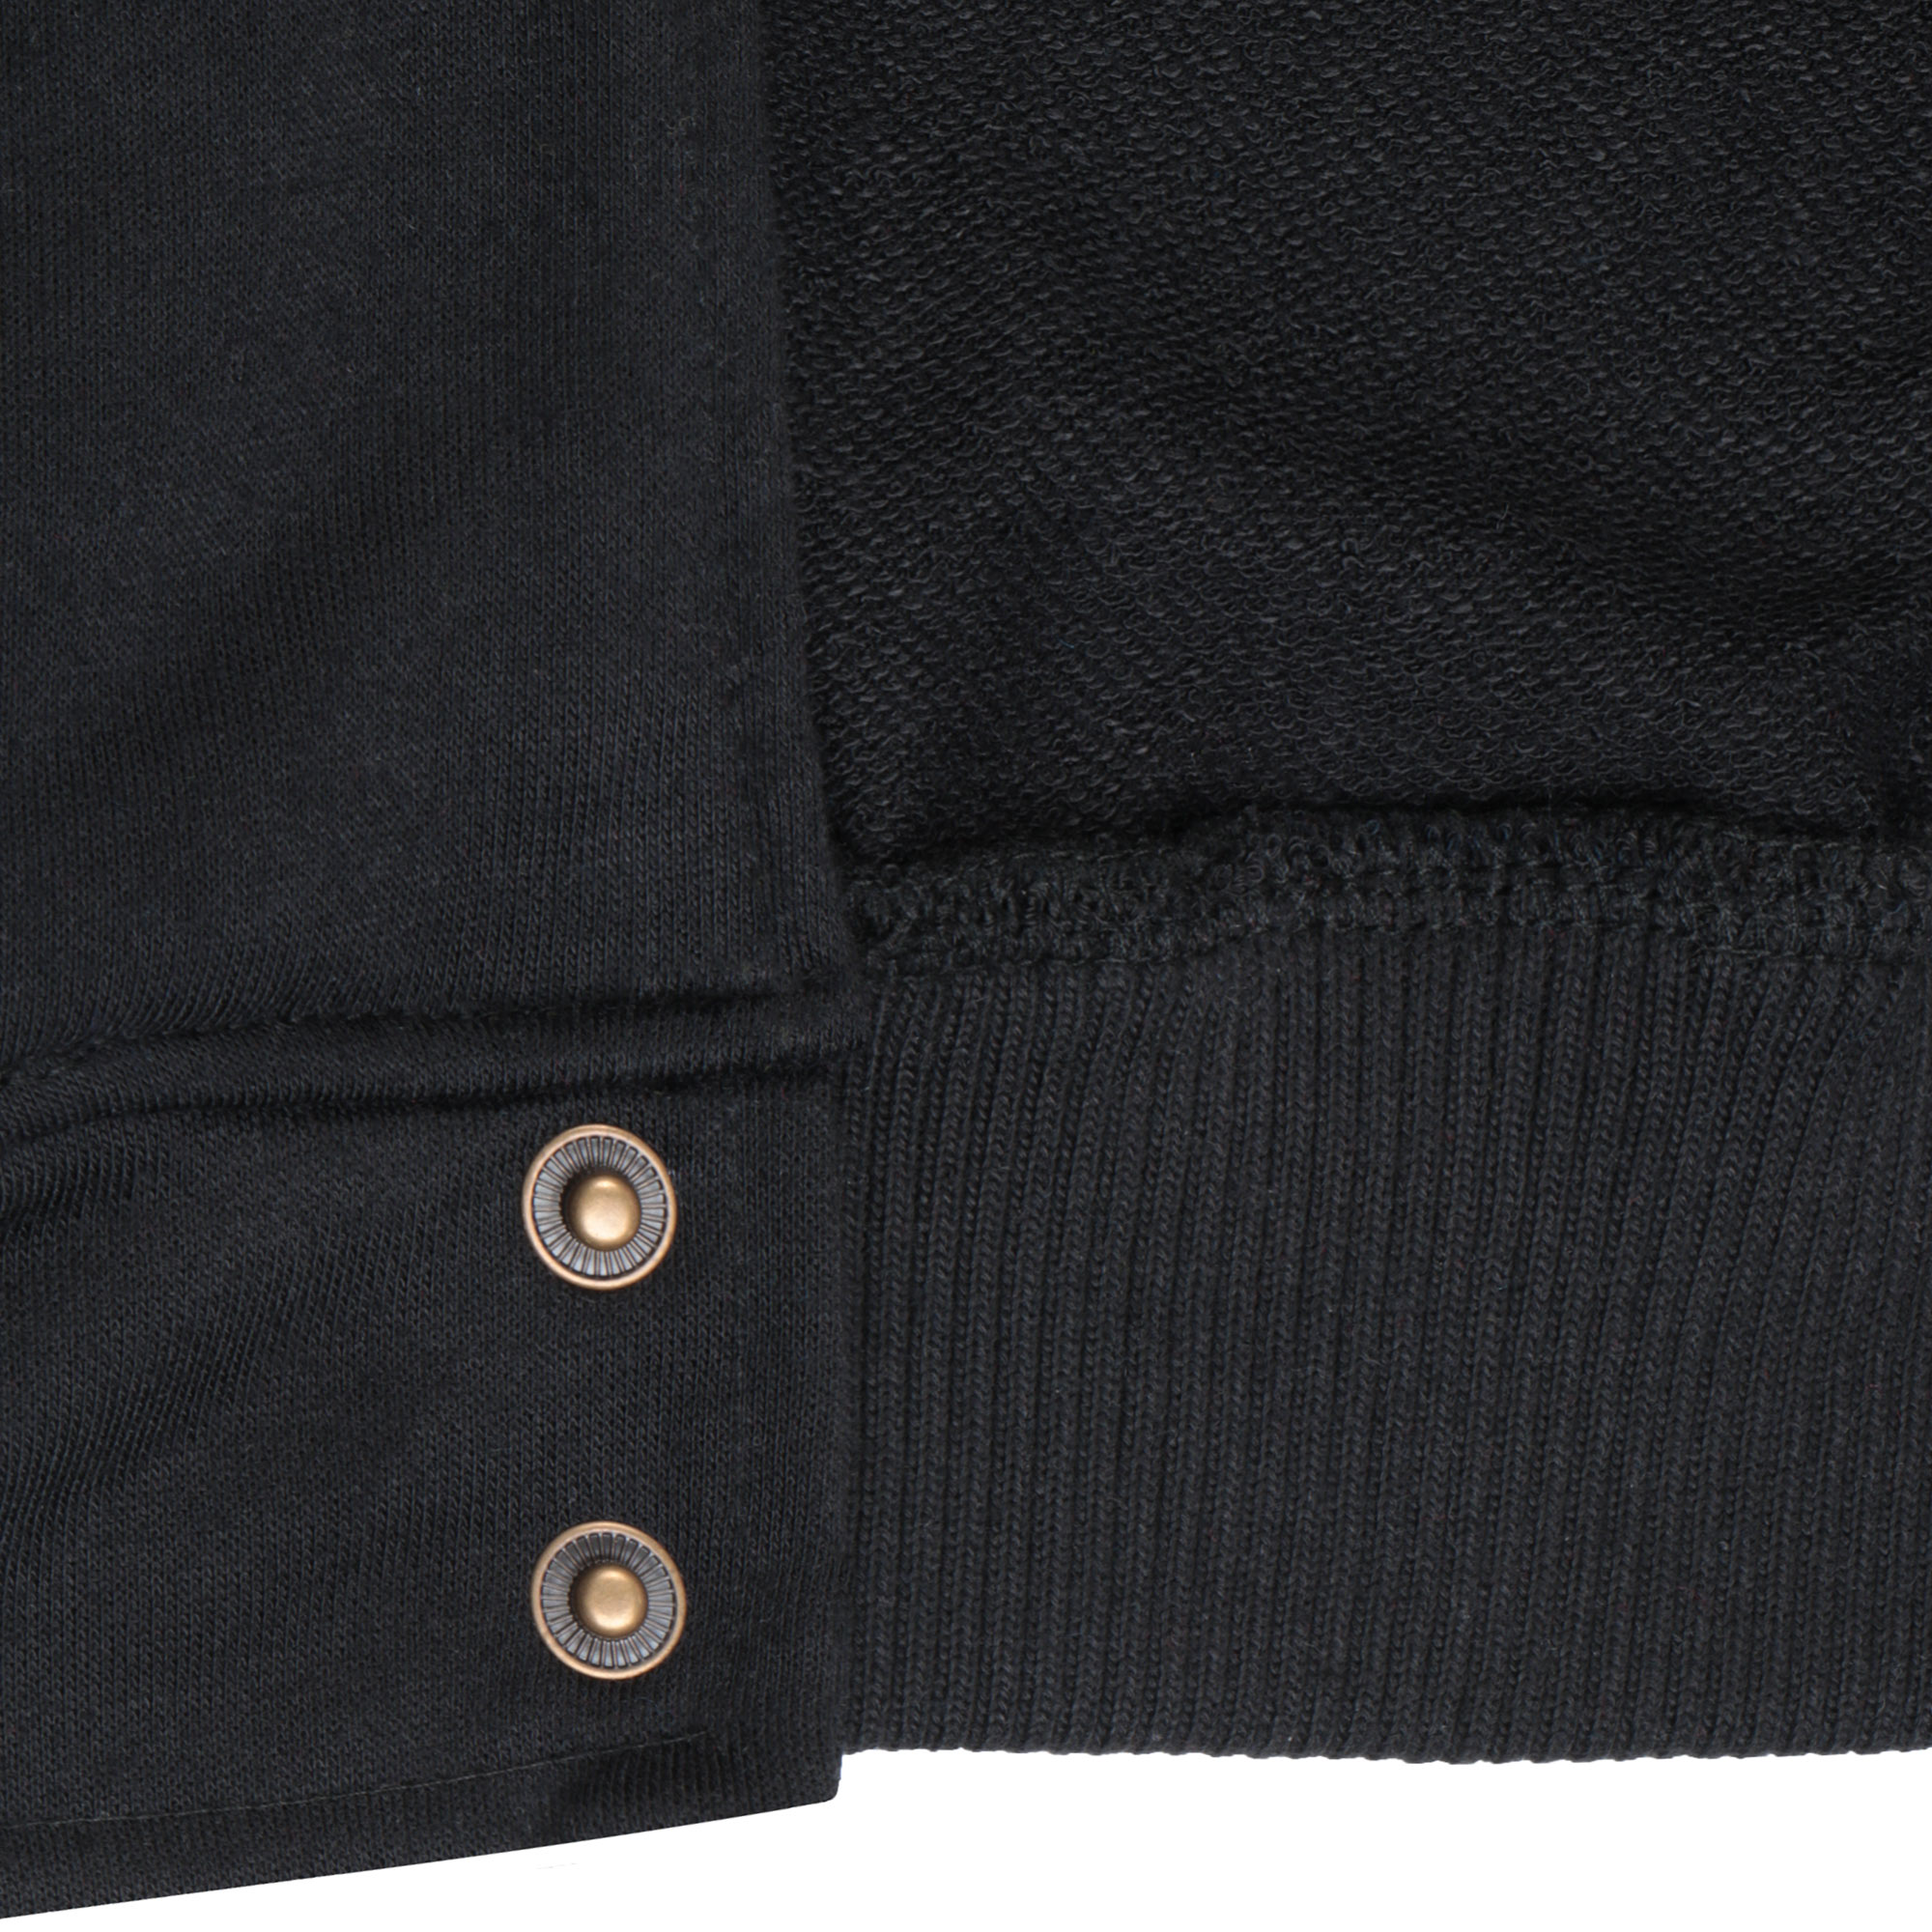 Бомбер Garment чёрный/белый M полиэстер, цвет черный, размер M - фото 5